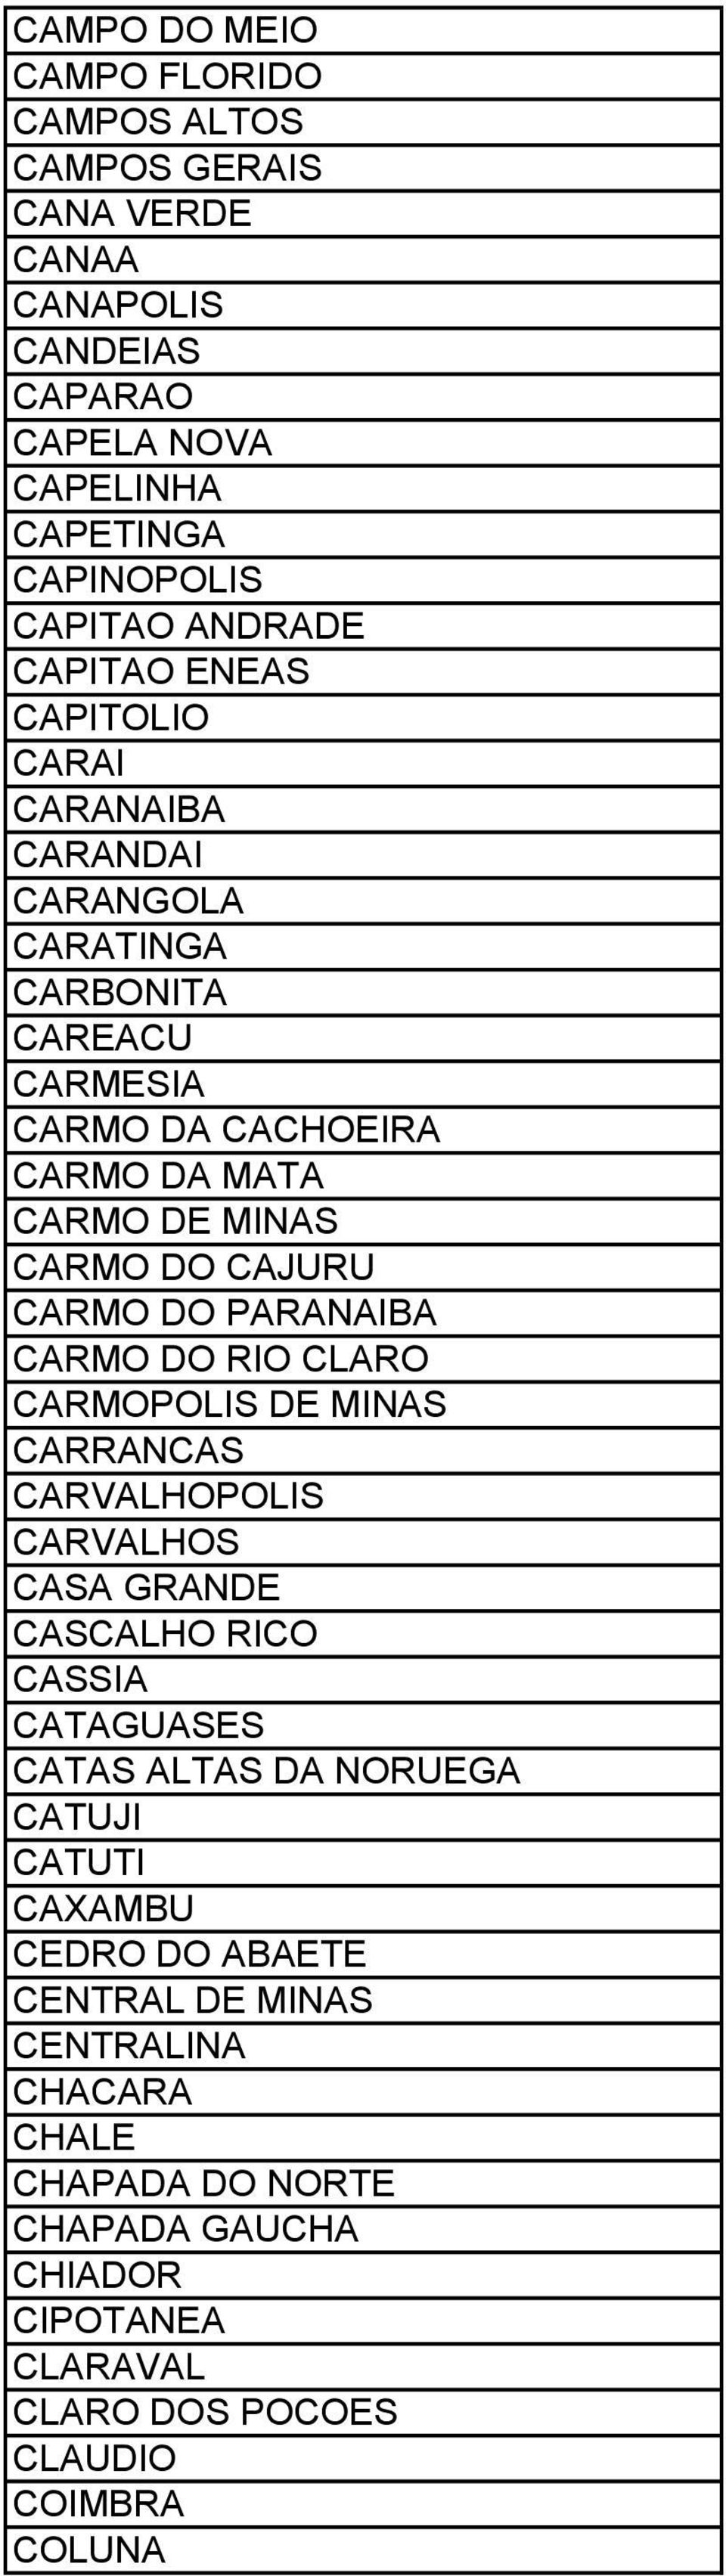 CARMO DO PARANAIBA CARMO DO RIO CLARO CARMOPOLIS DE MINAS CARRANCAS CARVALHOPOLIS CARVALHOS CASA GRANDE CASCALHO RICO CASSIA CATAGUASES CATAS ALTAS DA NORUEGA